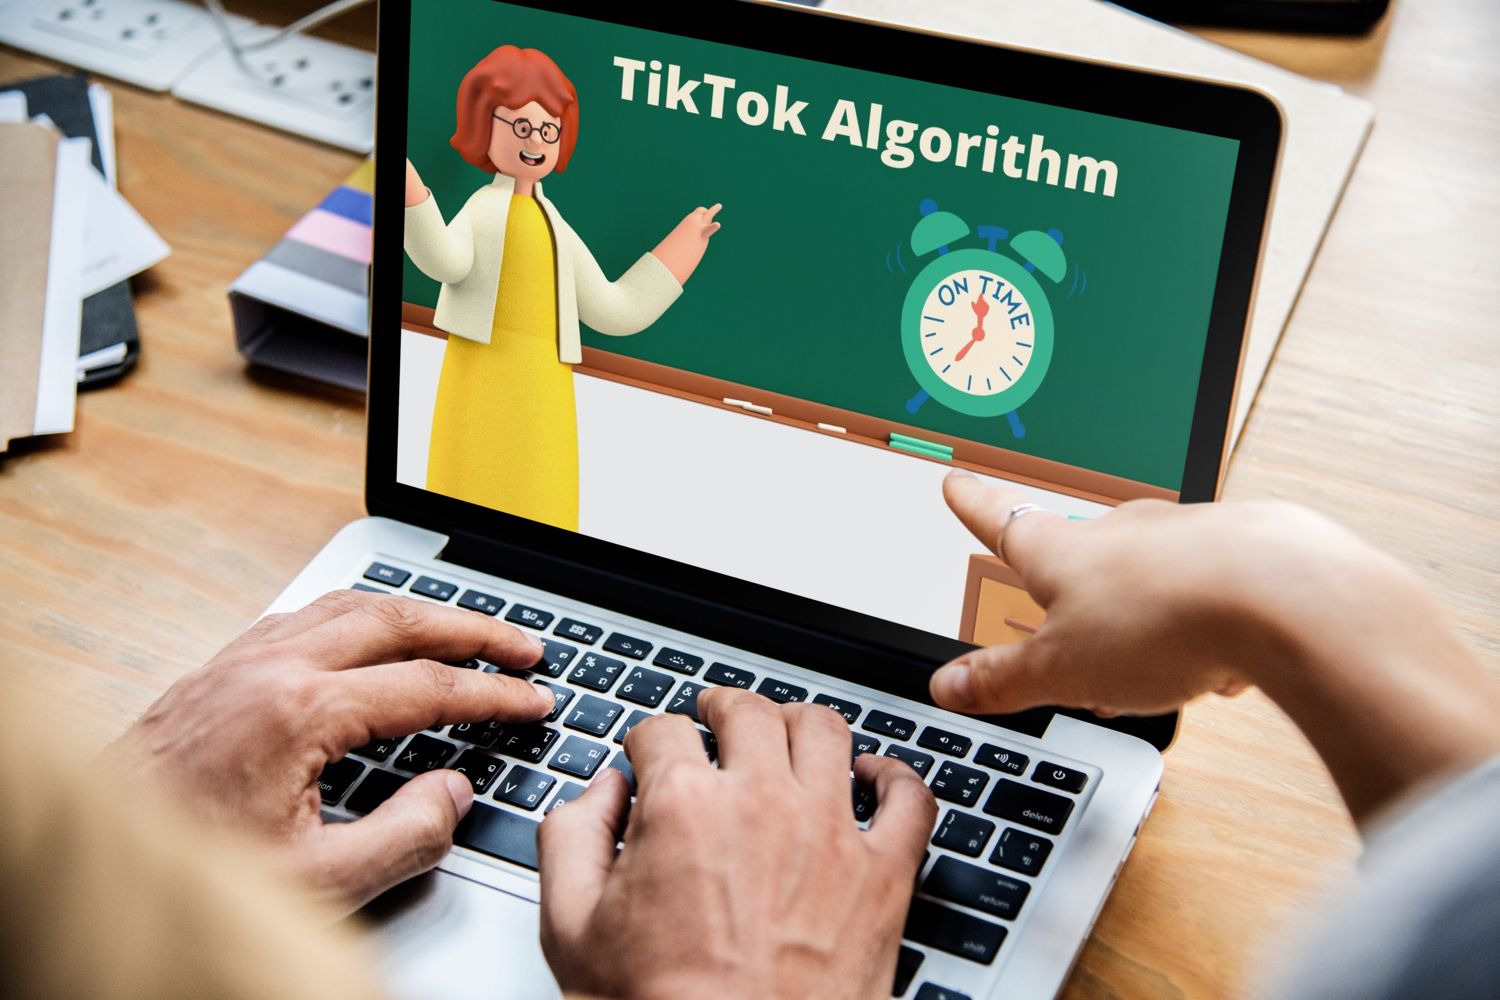 Tiktok algorithm on a laptop